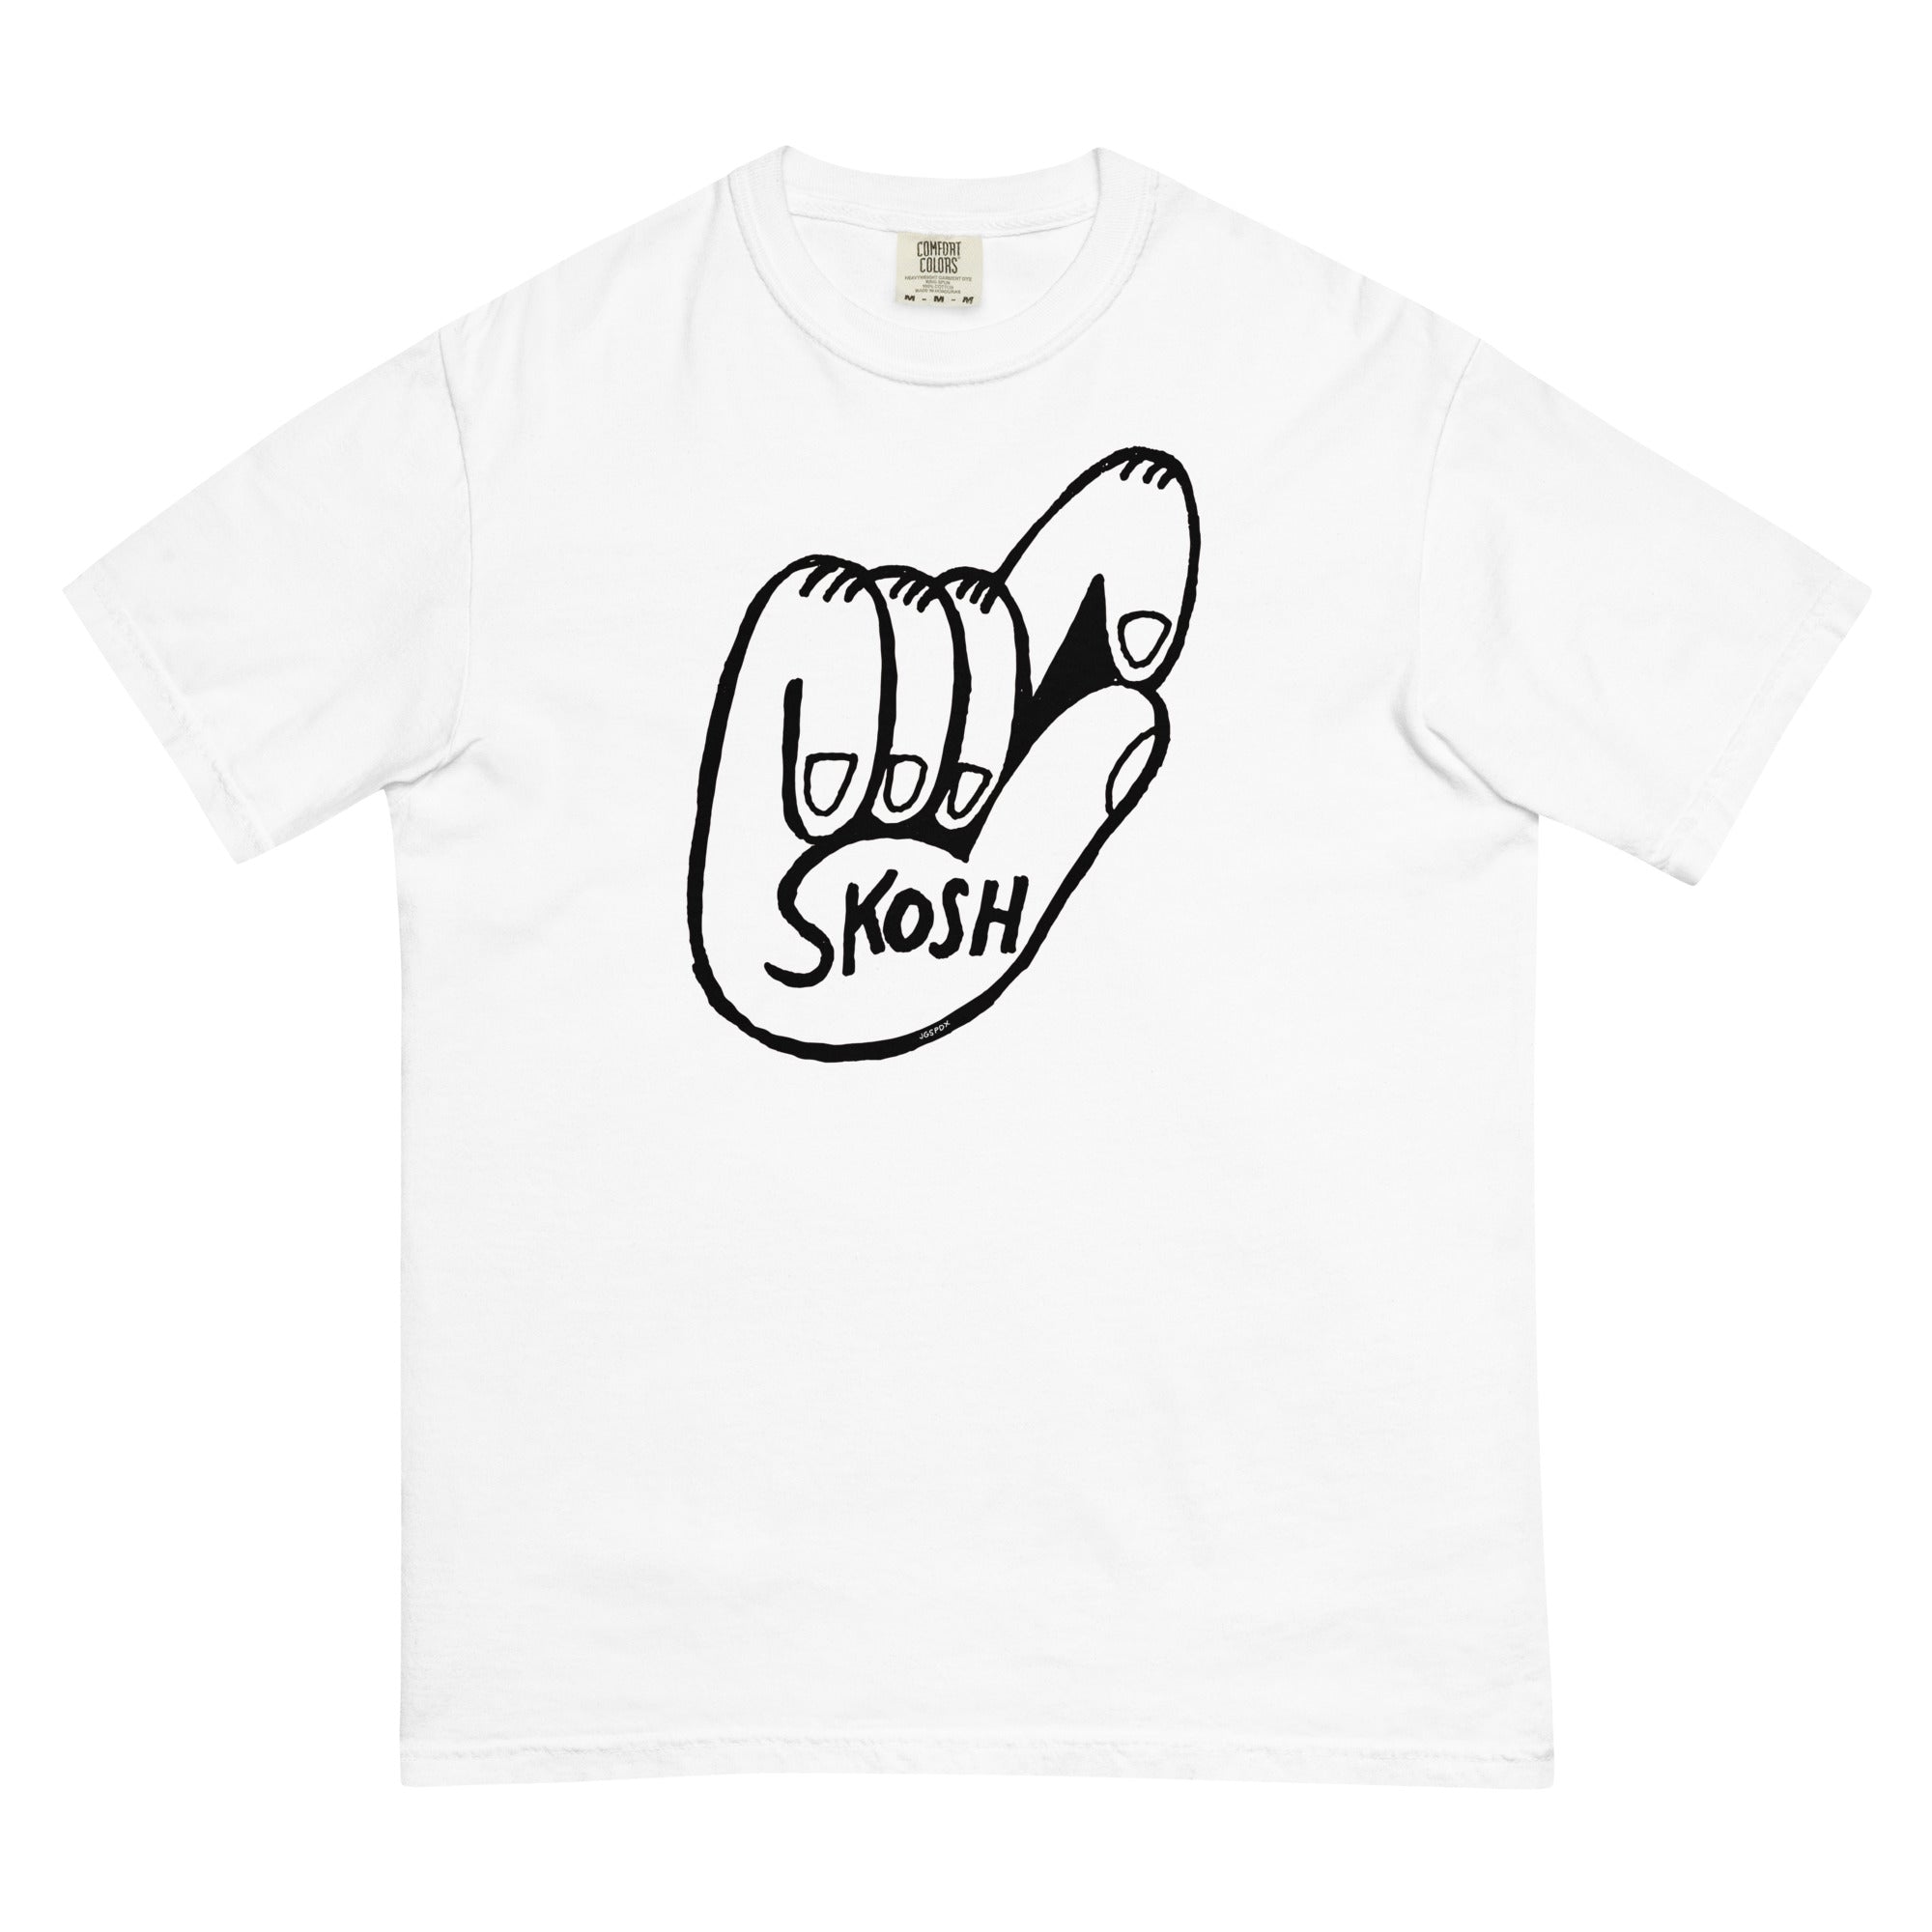 Skosh t-shirt (white)